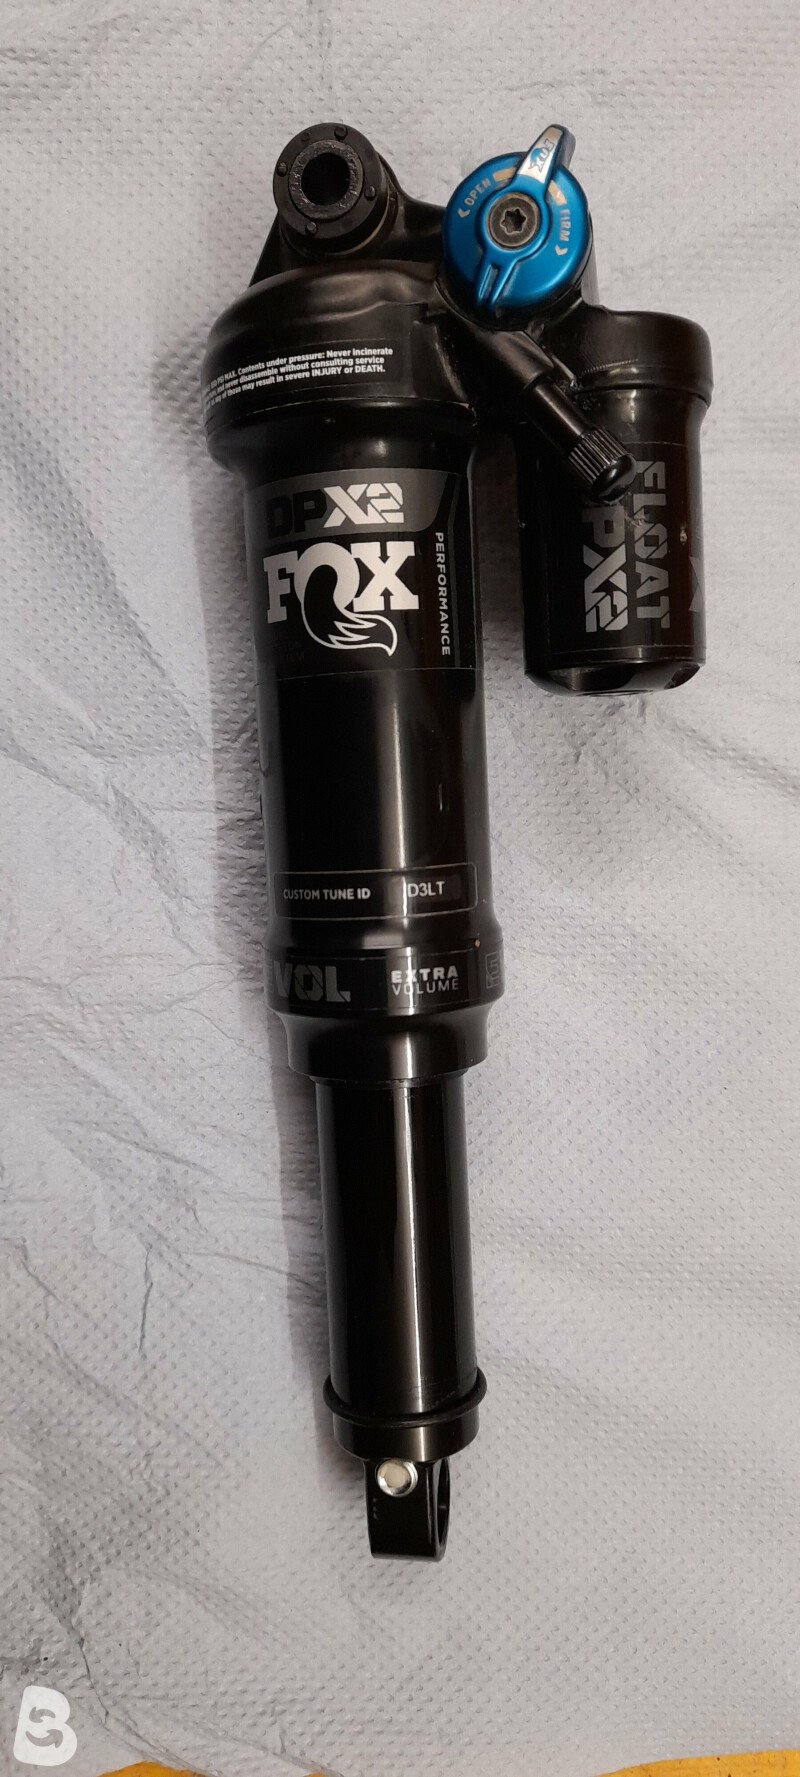 Fox Fox dpx 2 2020